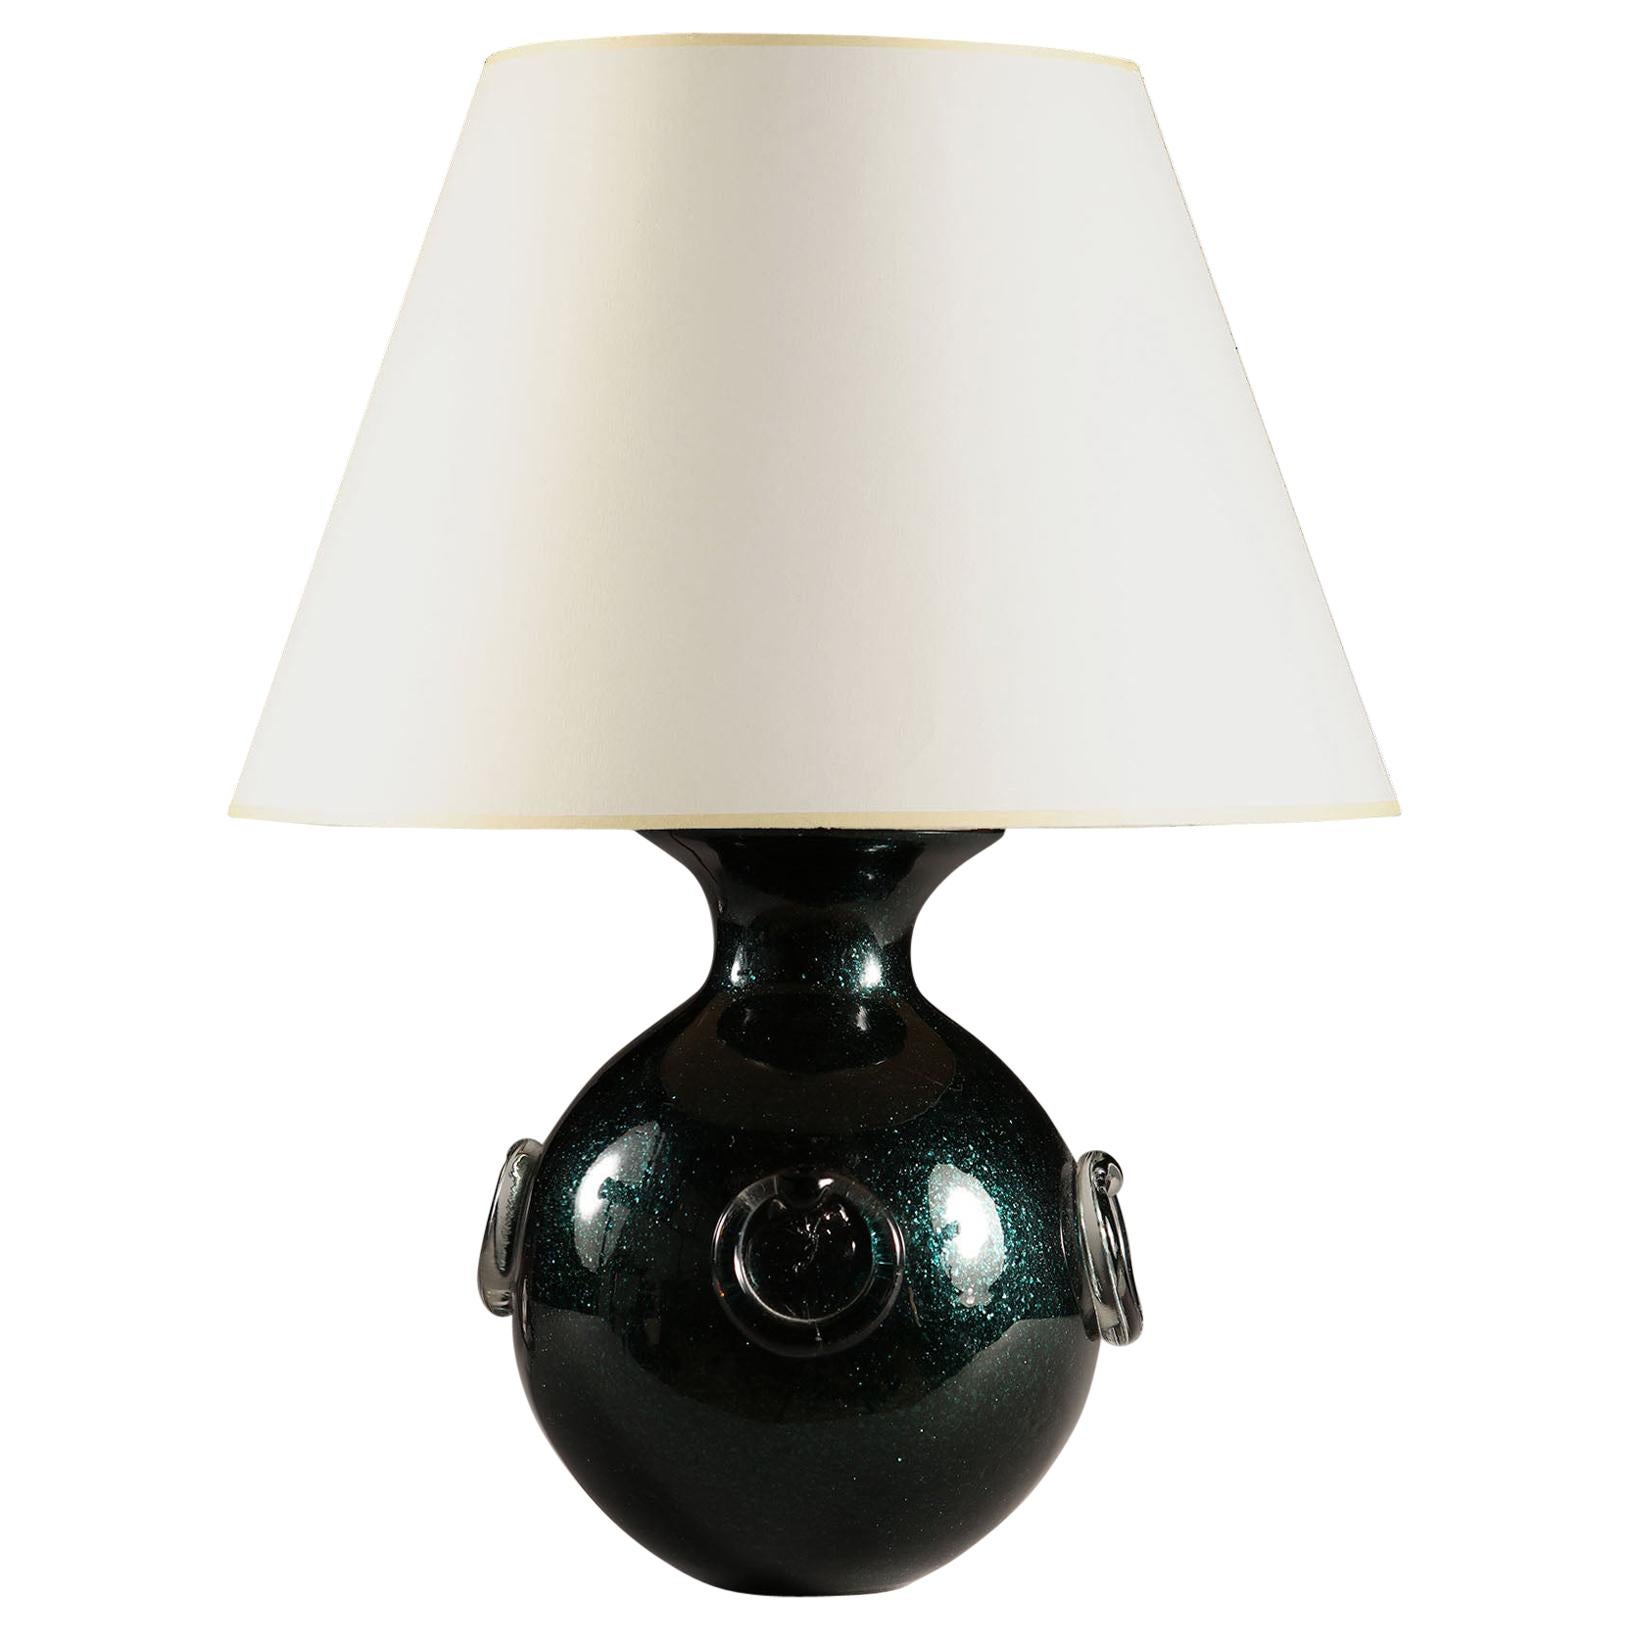 Mid-20th Century Iridescent Dark Green Italian Murano Glass Ball Table Lamp